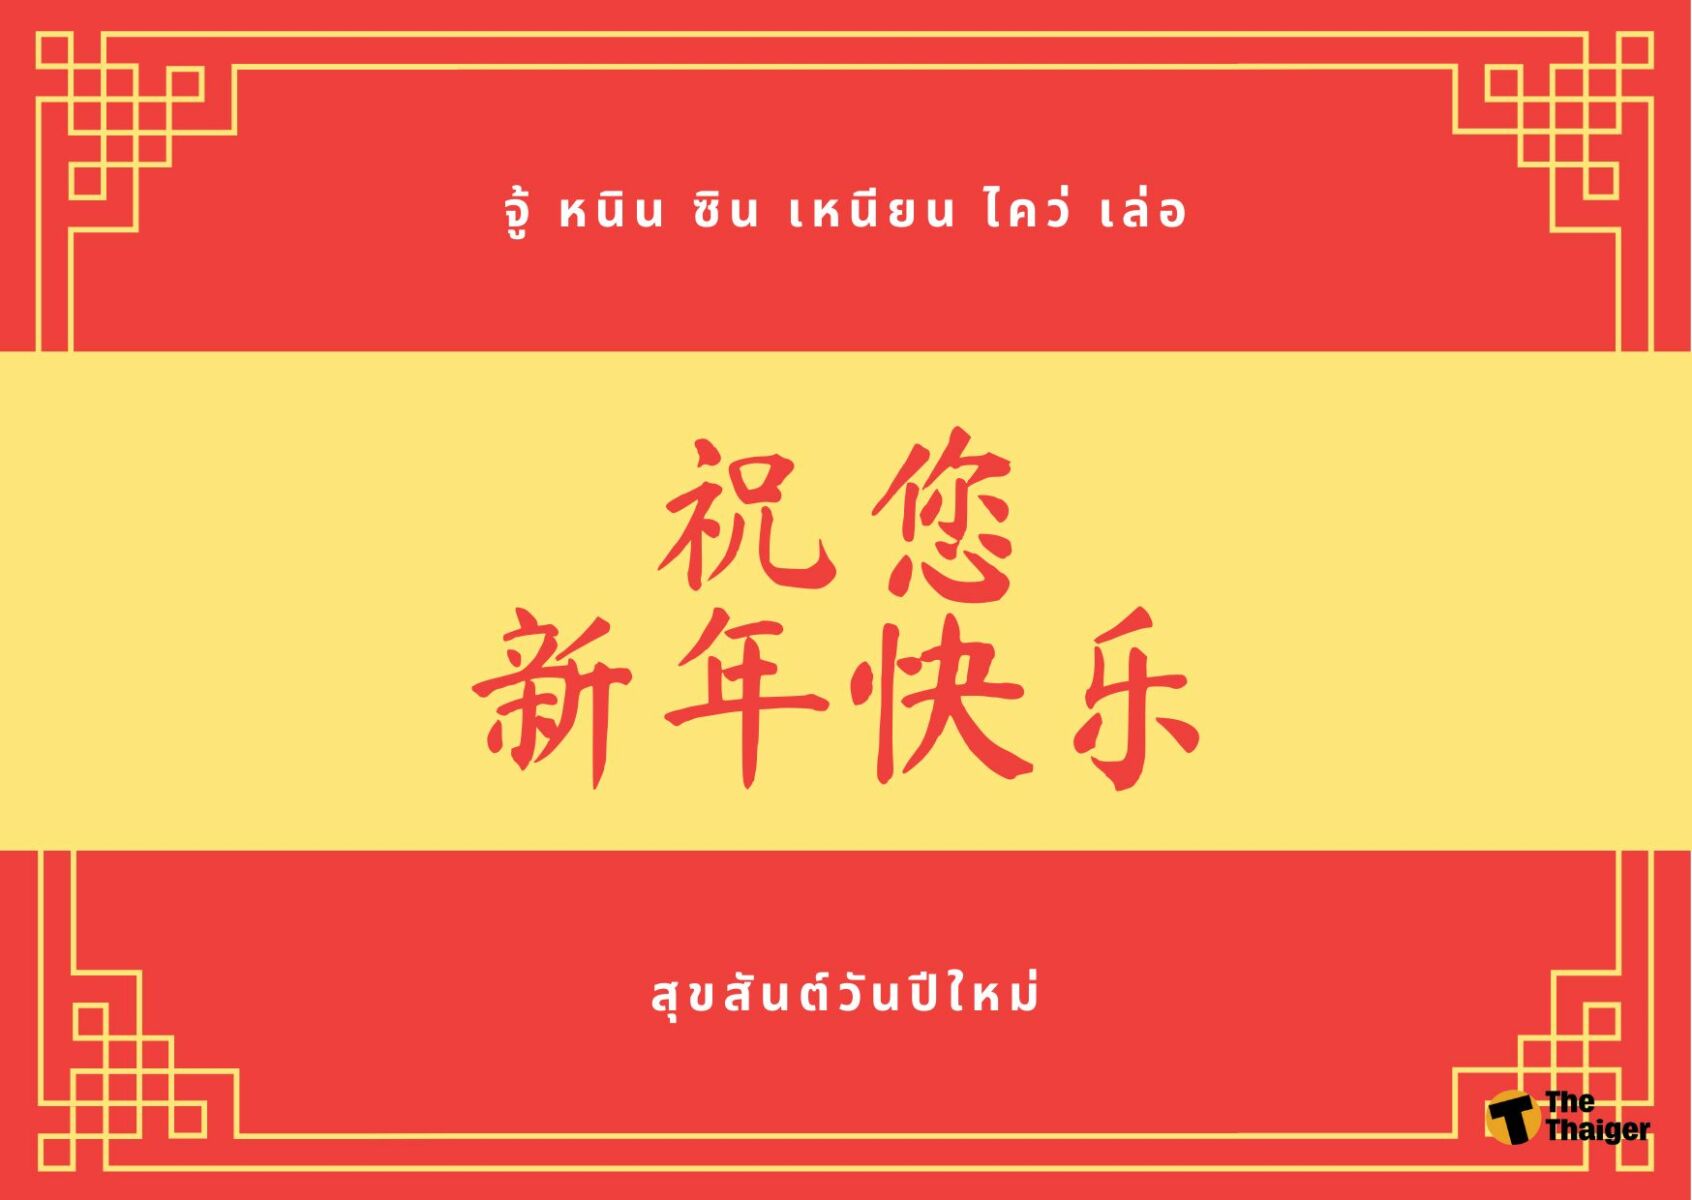 รวม 'คำอวยพรตรุษจีน' 2565 ภาษาจีน พร้อมคำแปล ไว้ส่งให้อากงม่าโกกู๋ |  Thaiger ข่าวไทย